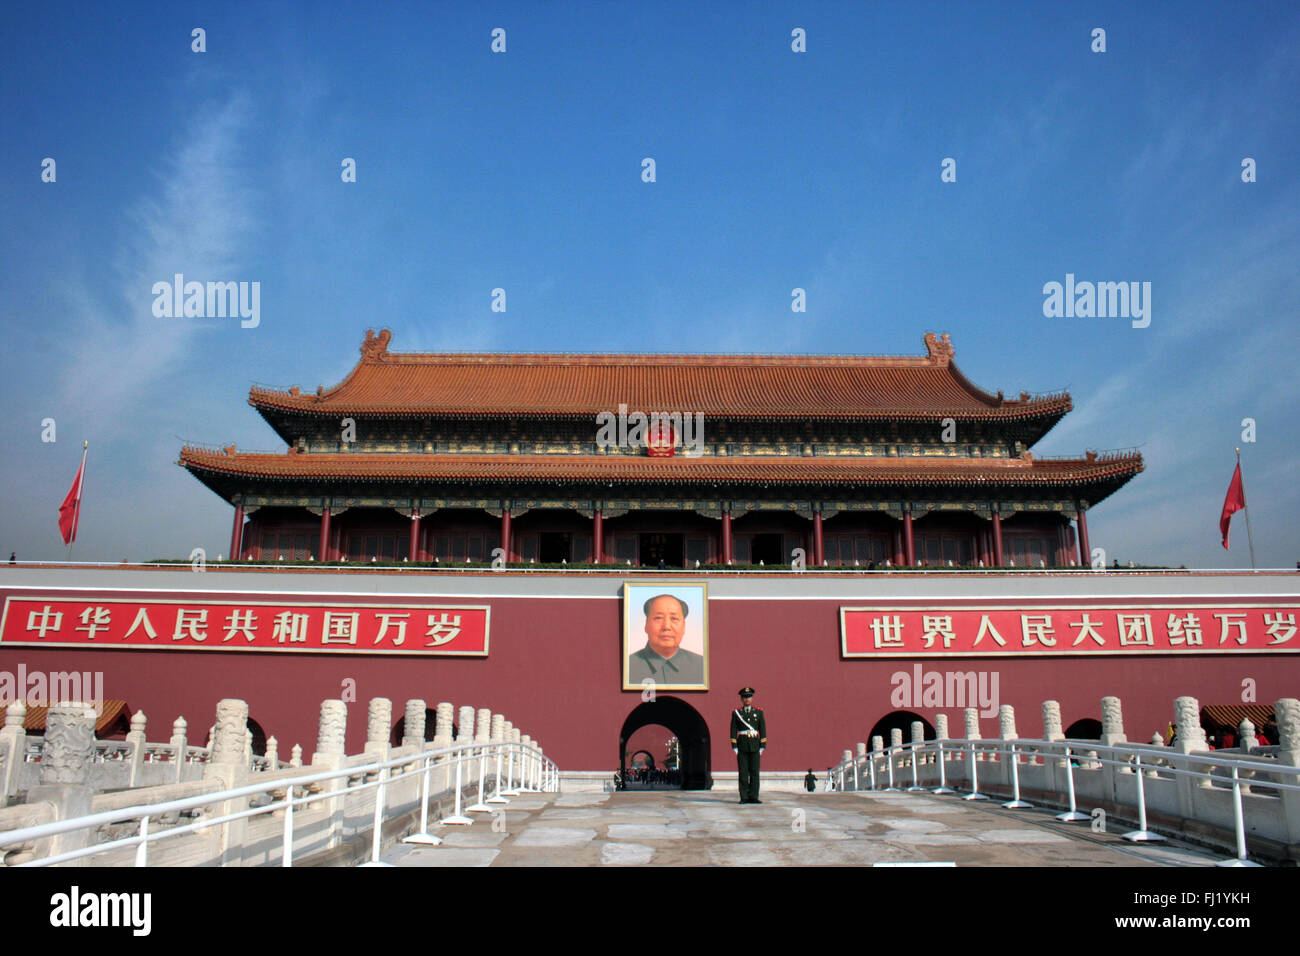 Entrée de la Cité Interdite , Beijing , avec grande photo de Mao Zedong sur le mur, Chine Banque D'Images